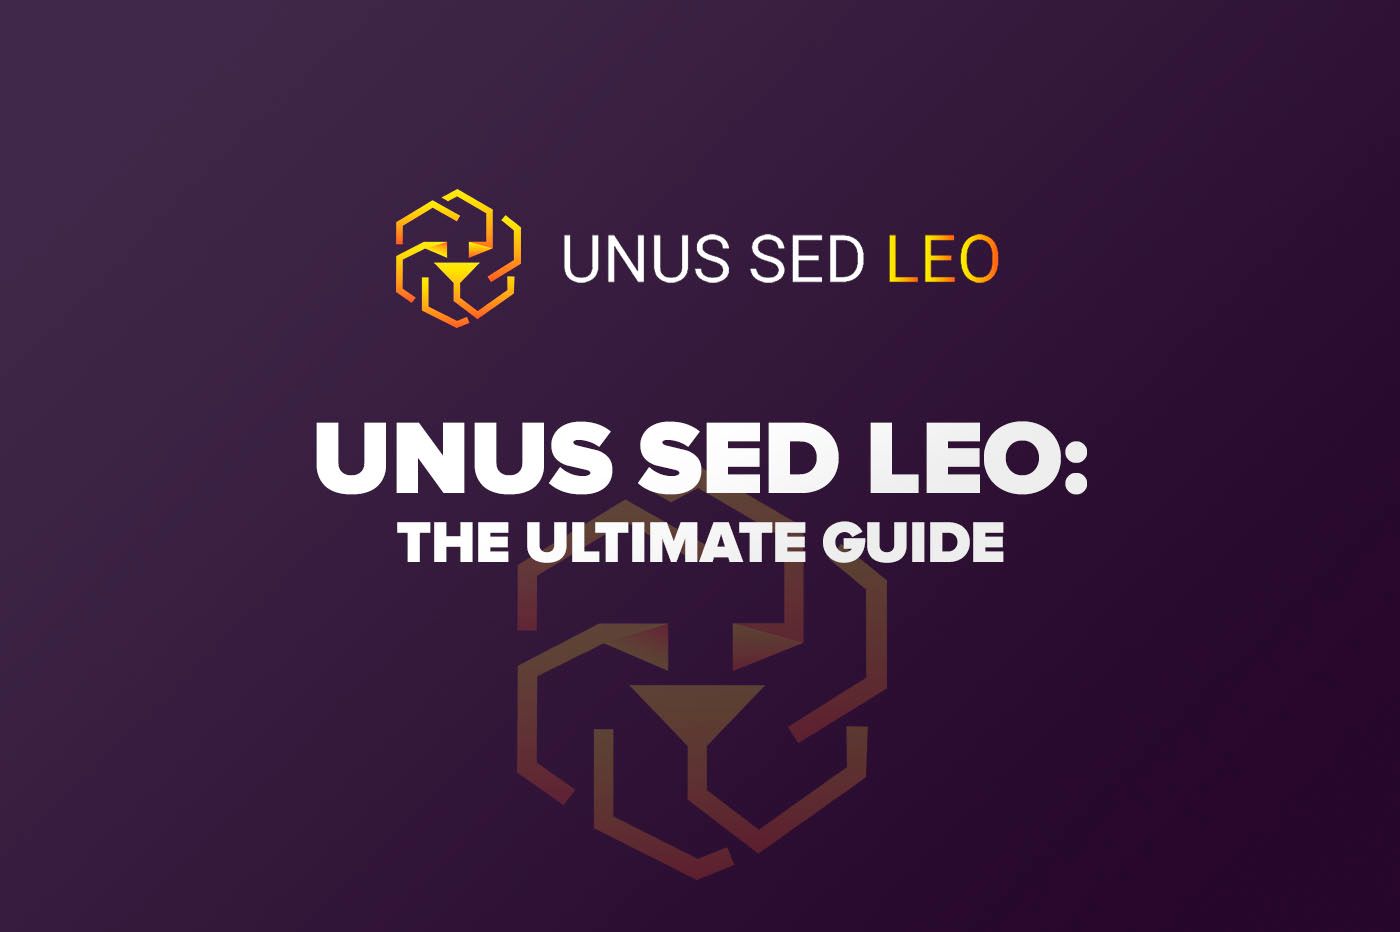 Article What is UNUS SED LEO